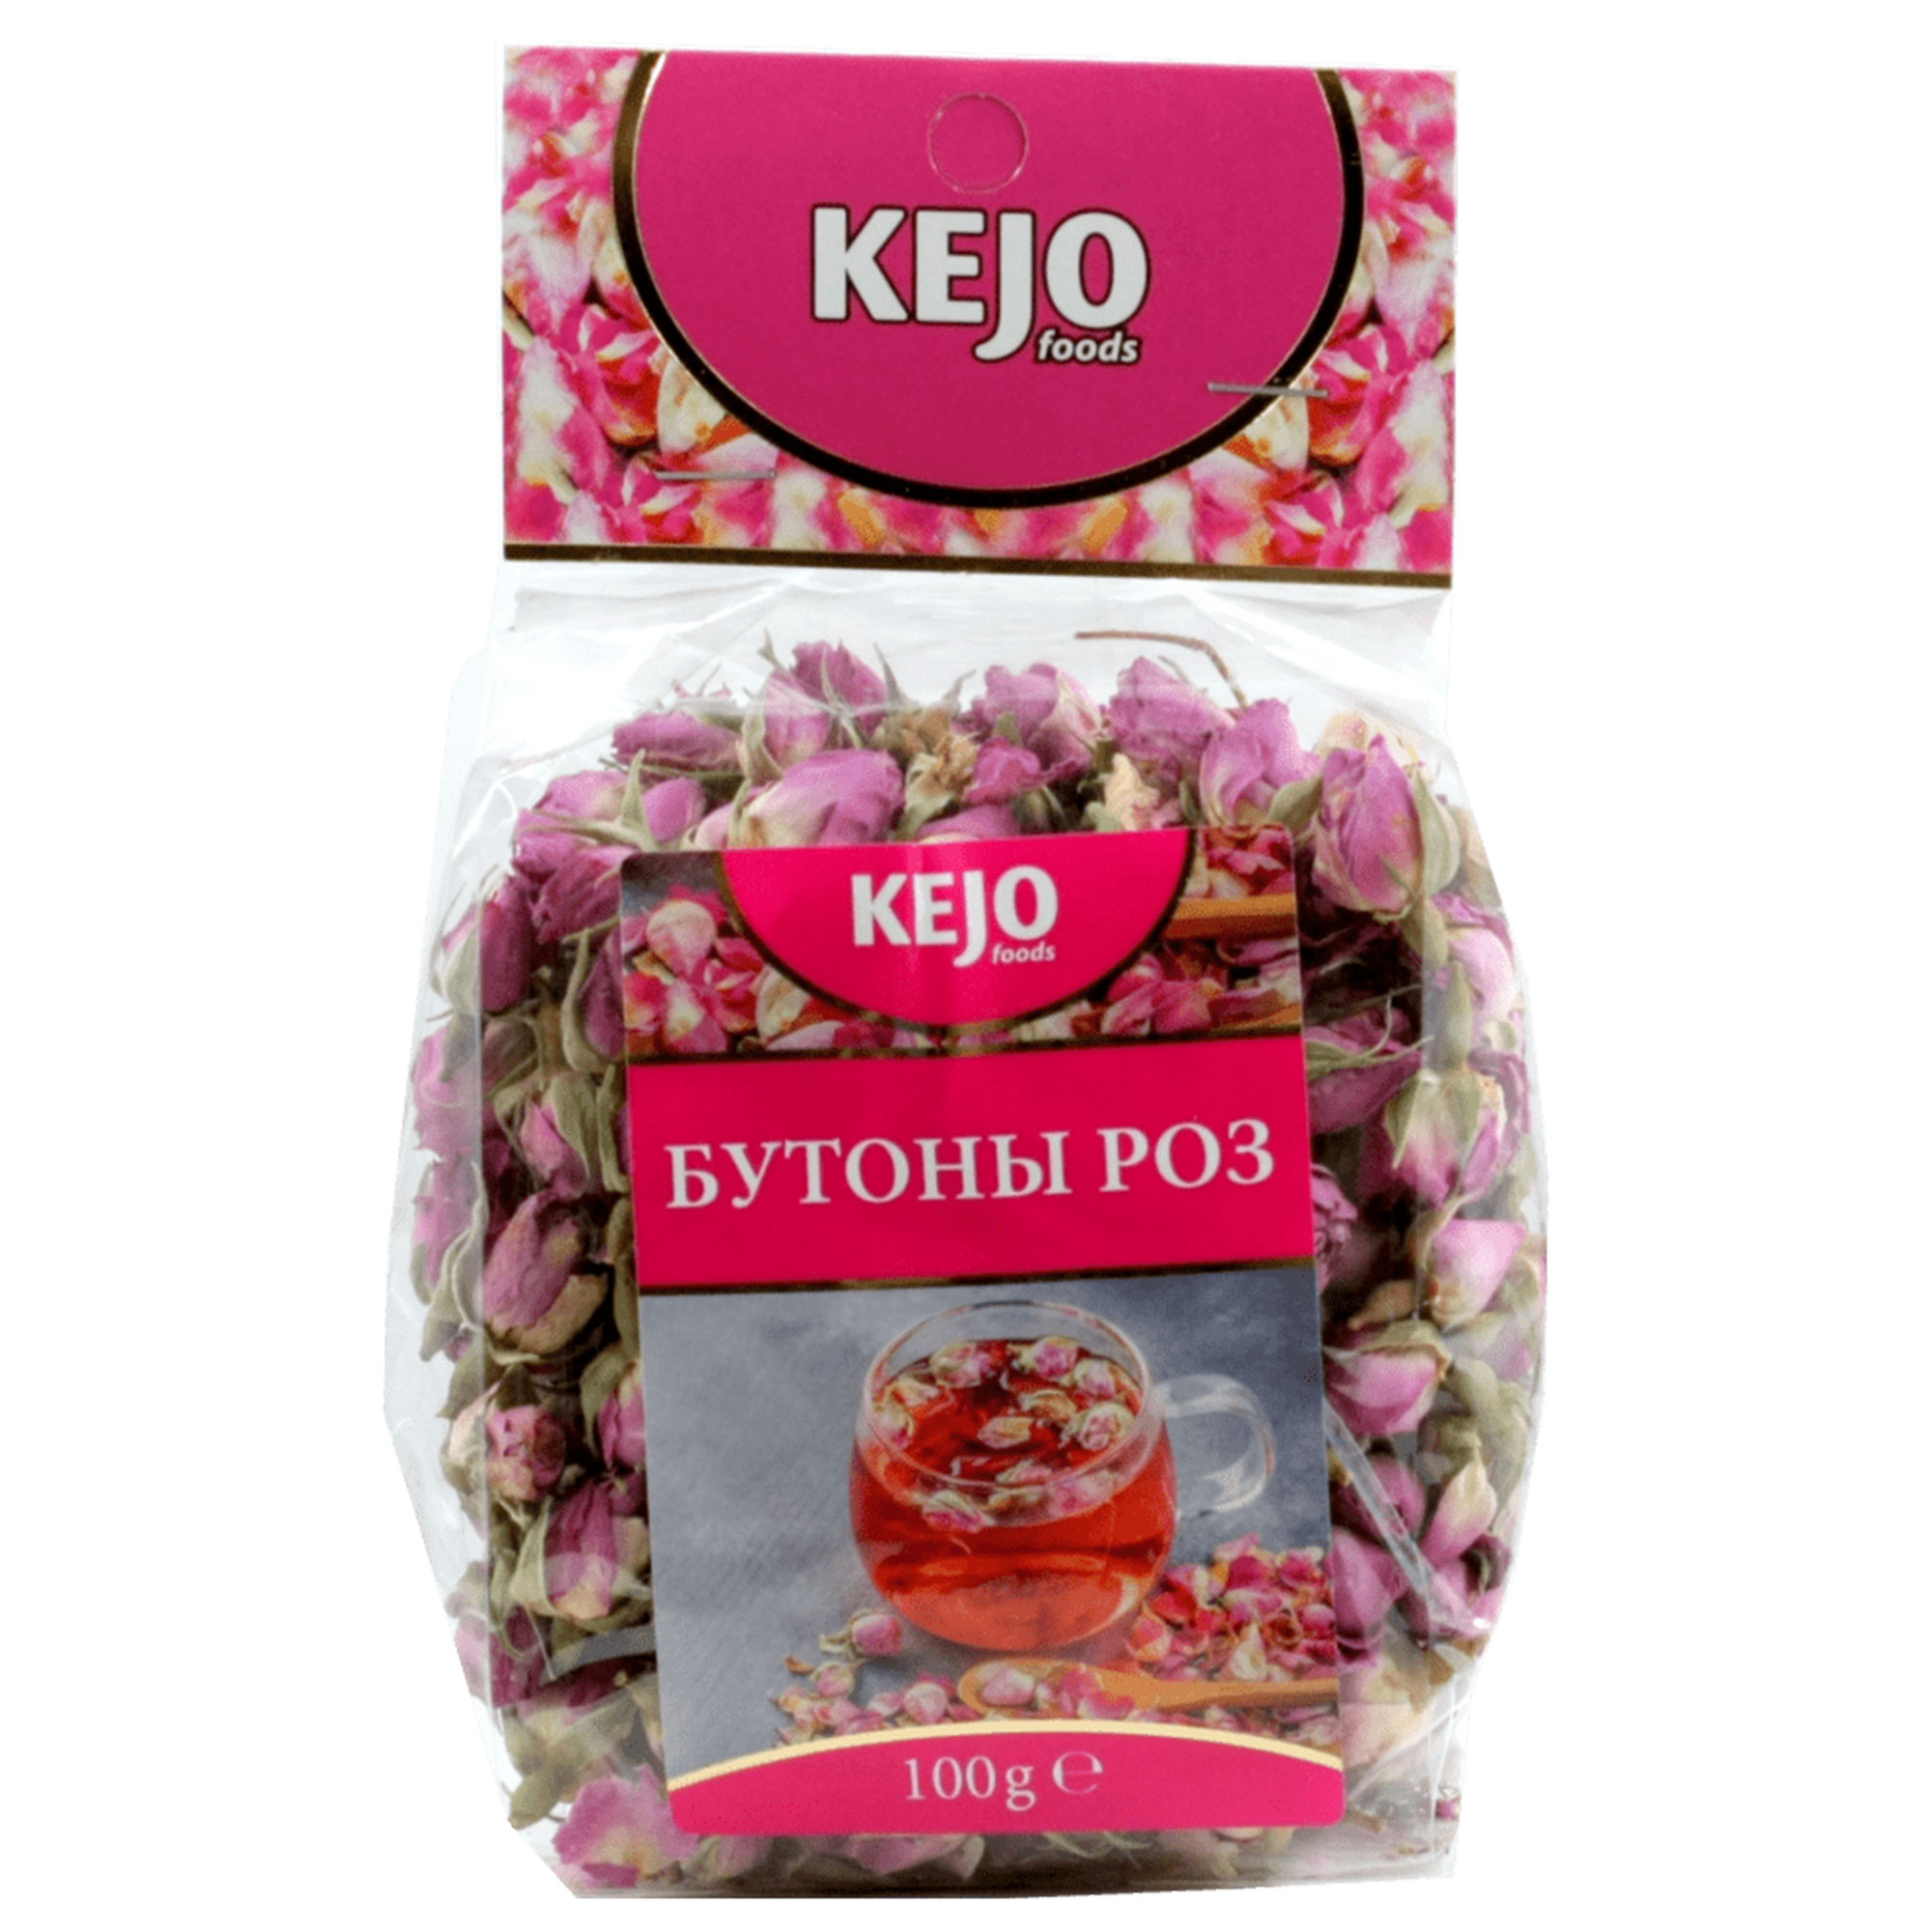 Чайный напиток Kejo Foods Бутоны роз 100 г напиток perrier со вкусом клубники 0 5 литра газ пэт 24 шт в уп